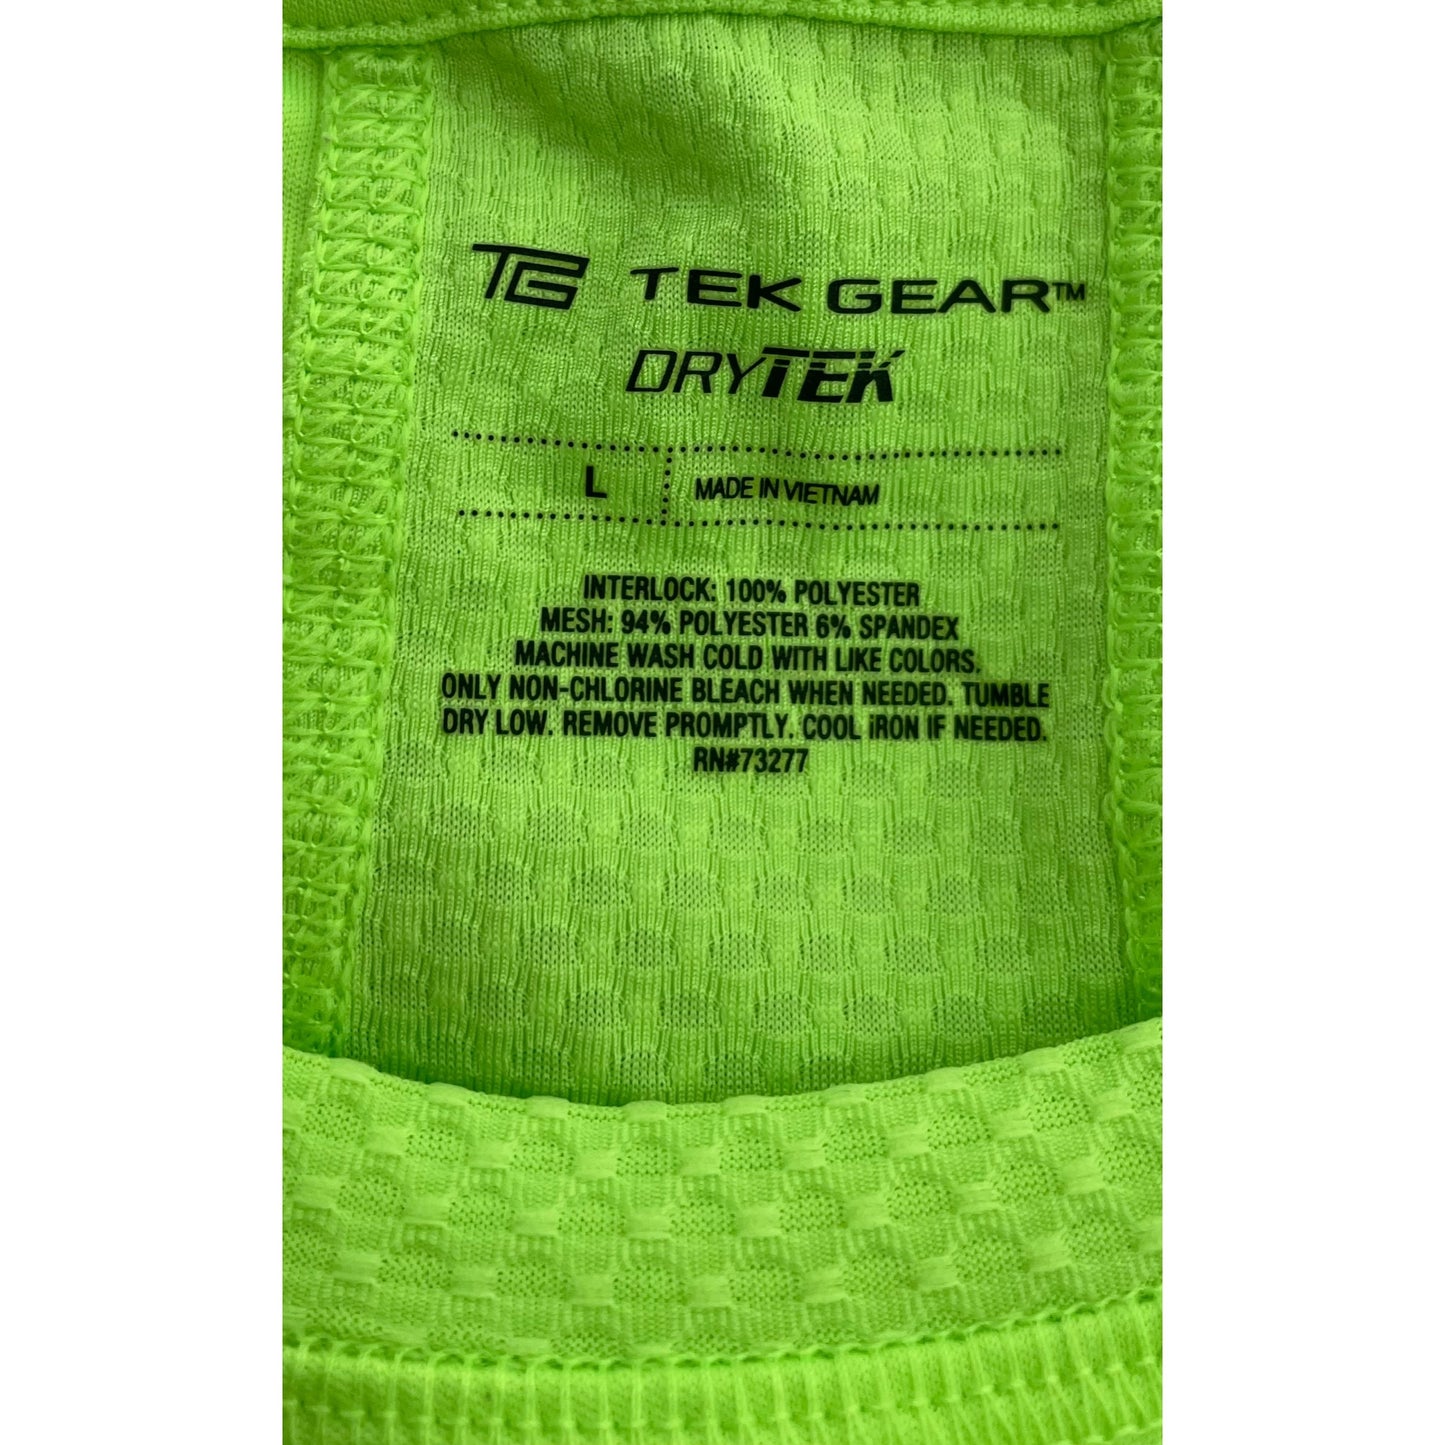 Tek Gear DryTEK Women's Size Large Neon Green/Chartreuse Crew Neck Workout T-Shirt